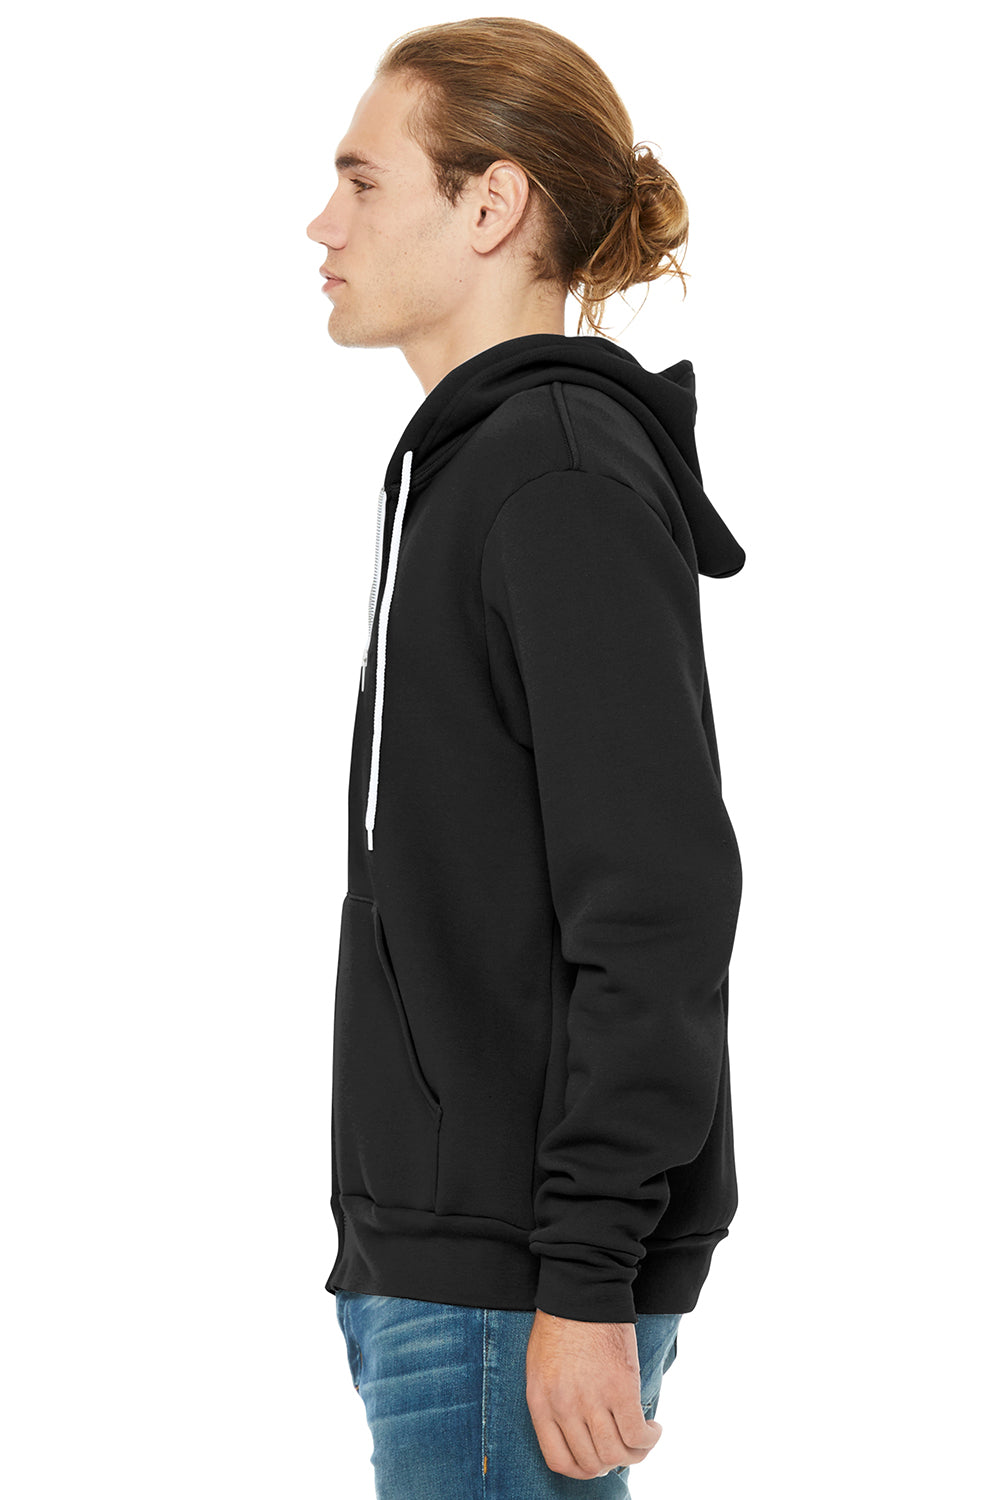 Bella + Canvas BC3739/3739 Mens Fleece Full Zip Hooded Sweatshirt Hoodie DTG Black Model Side